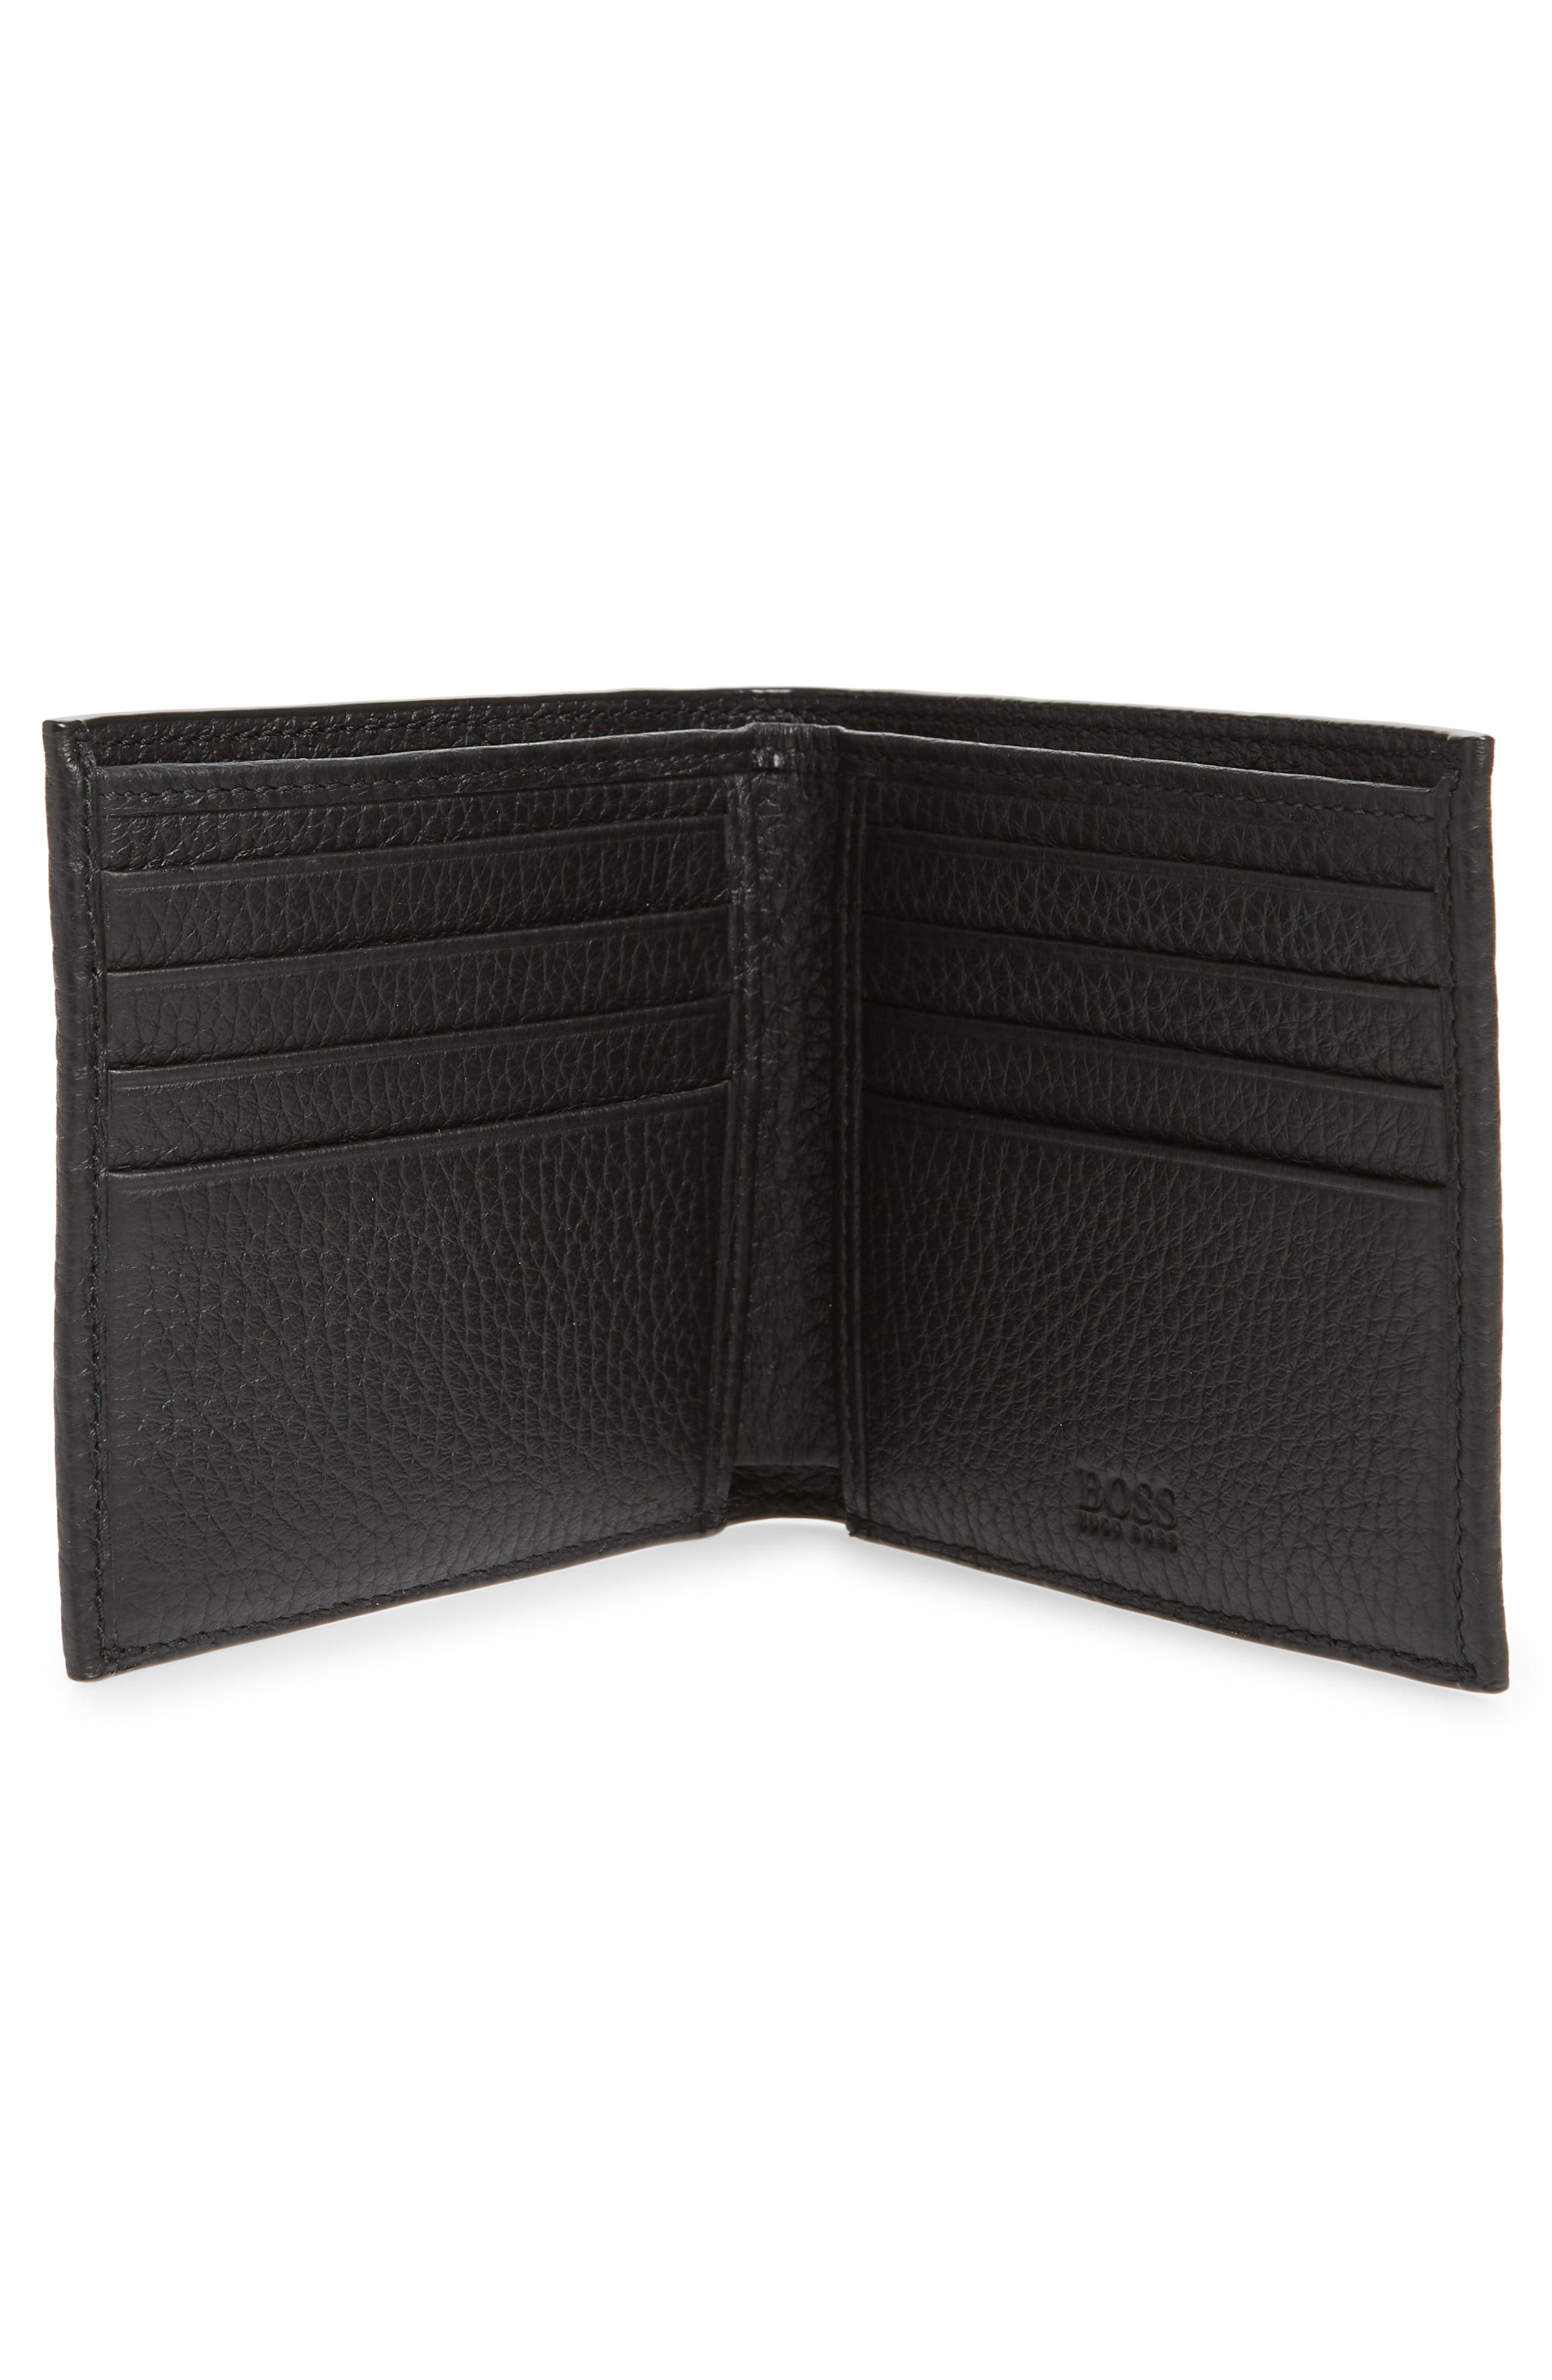 Buy HUGO BOSS Men Wallet Black [50261706] Online - Best Price HUGO BOSS Men  Wallet Black [50261706] - Justdial Shop Online.